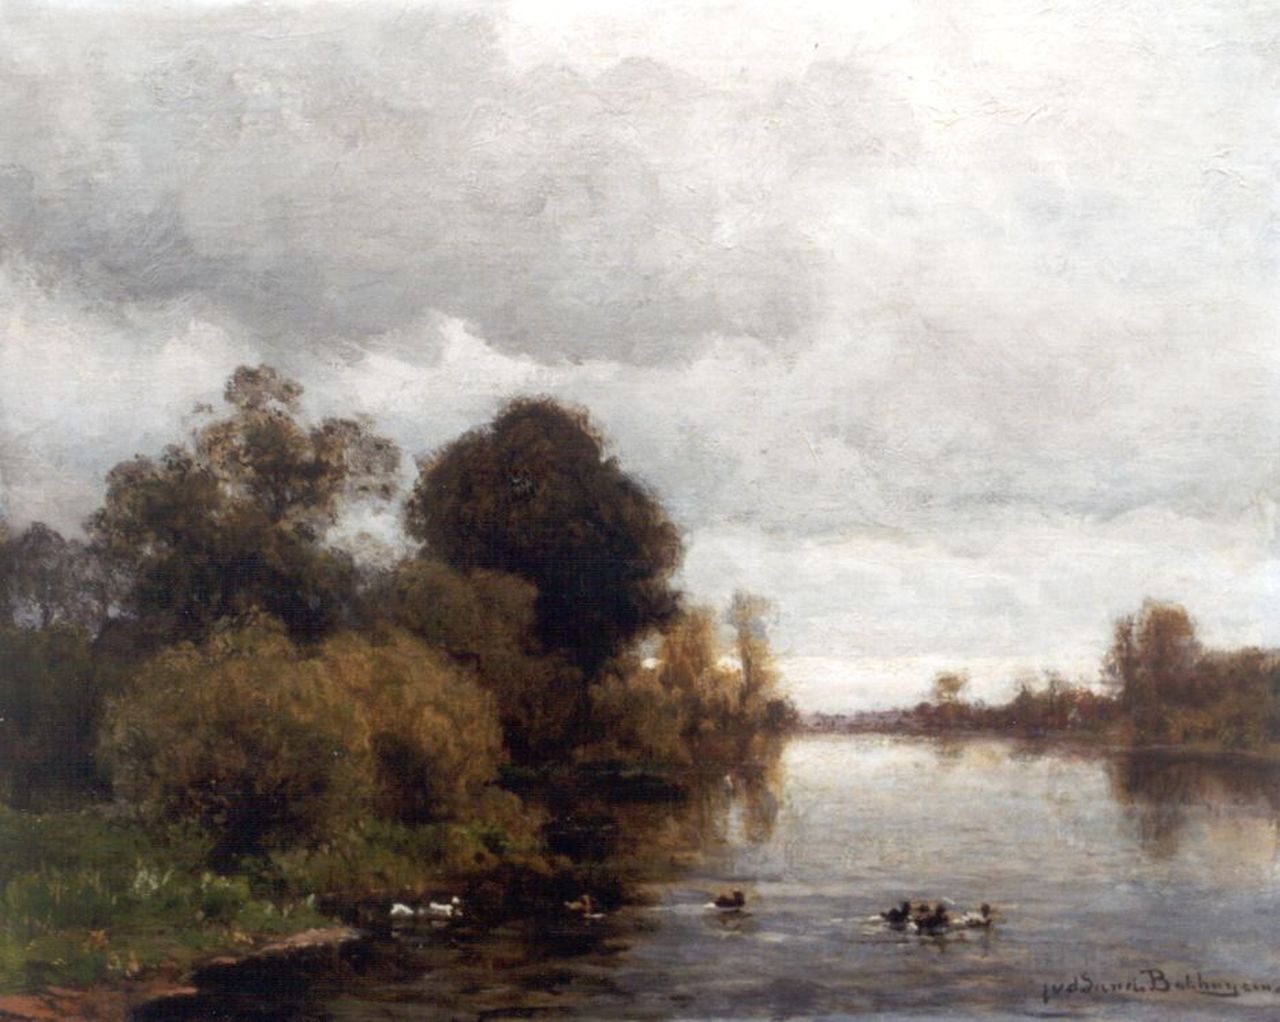 Sande Bakhuyzen J.J. van de | Julius Jacobus van de Sande Bakhuyzen, A river landscape, oil on canvas laid down on panel 37.2 x 45.2 cm, signed l.r.